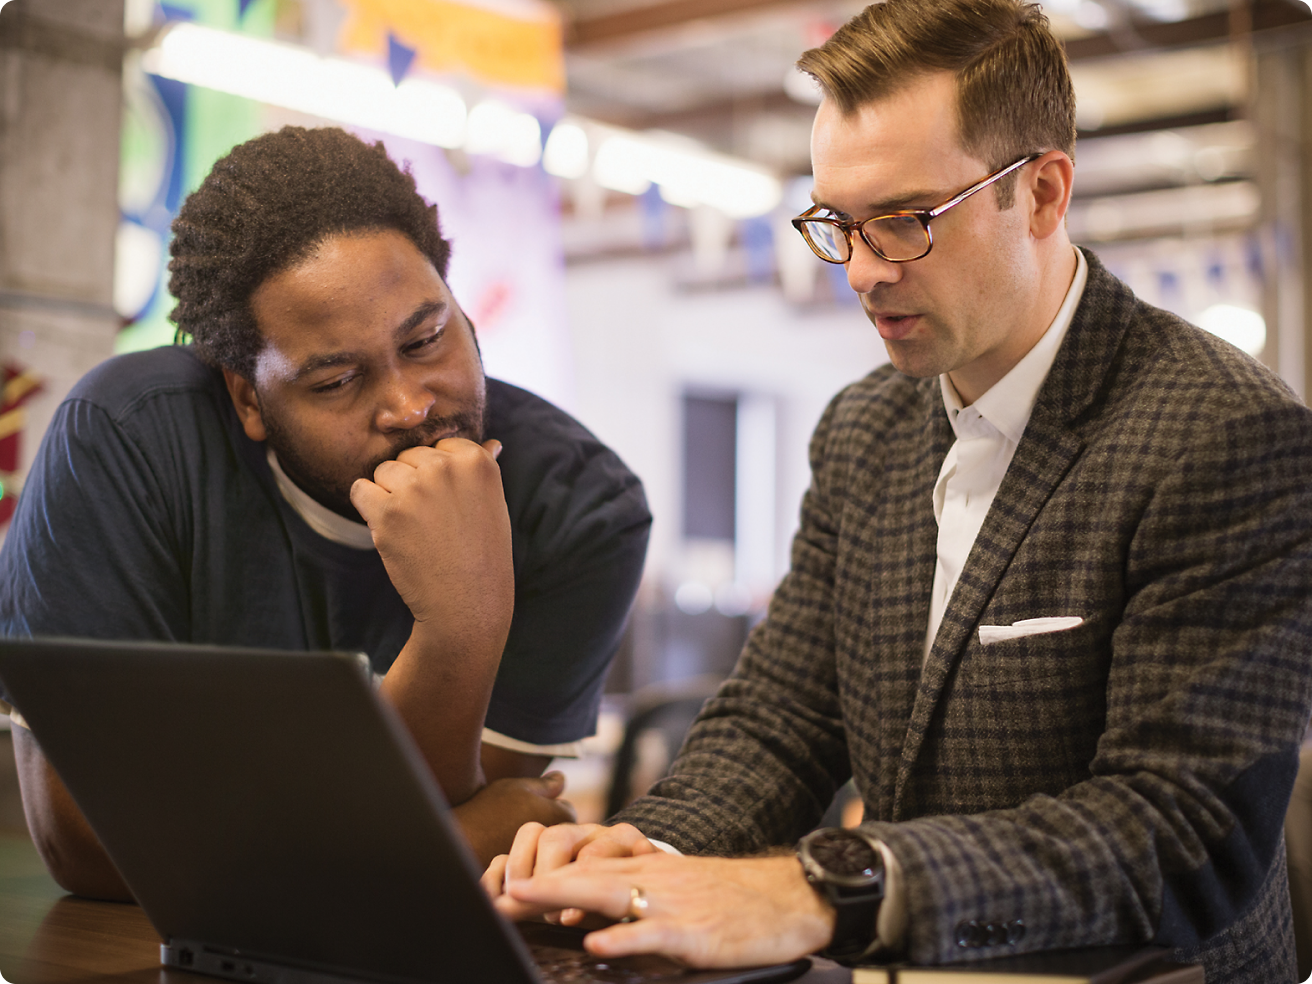 Zwei Männer, einer mit Brille, überprüfen in einer Büroumgebung gemeinsam Inhalte auf einem Laptop.